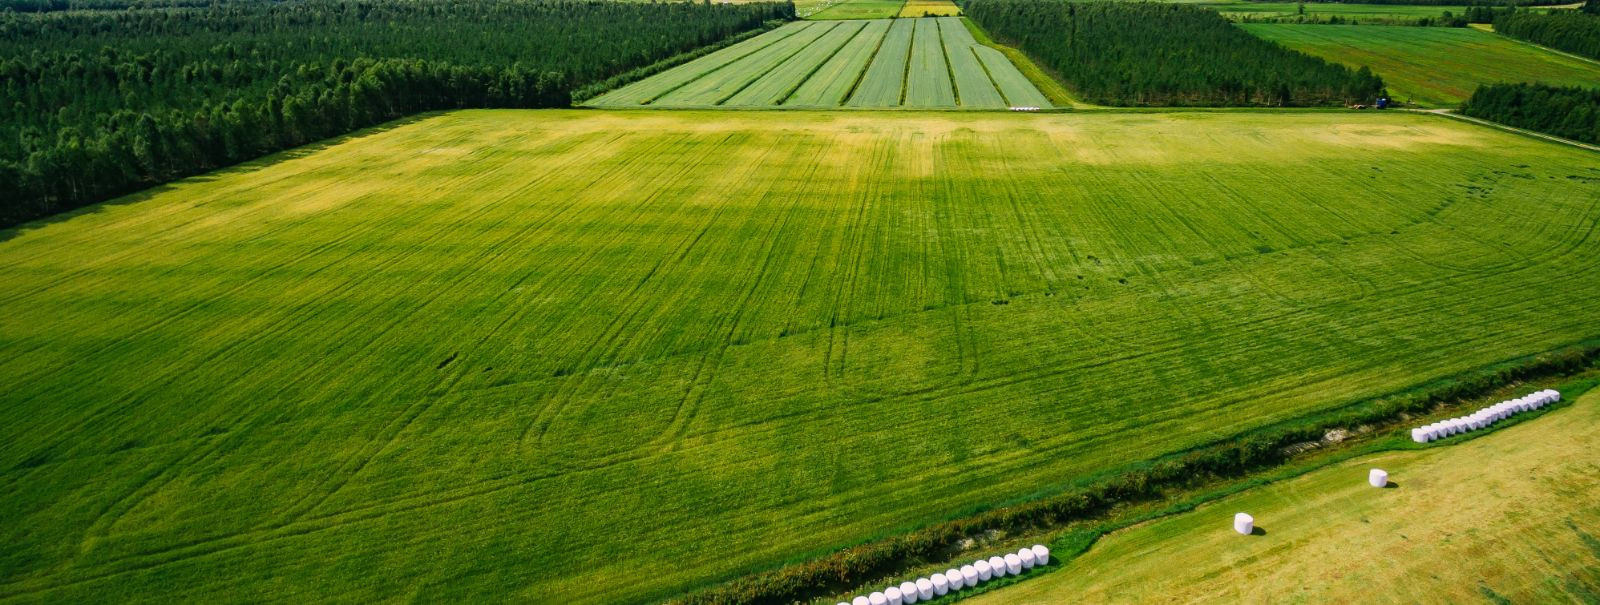 Eesti, riik, mis on tuntud oma rikkalike loodusvarade ja viljakate maade poolest, on põllumajanduses pikaaegsete traditsioonidega. Sektor mängib olulist rolli r